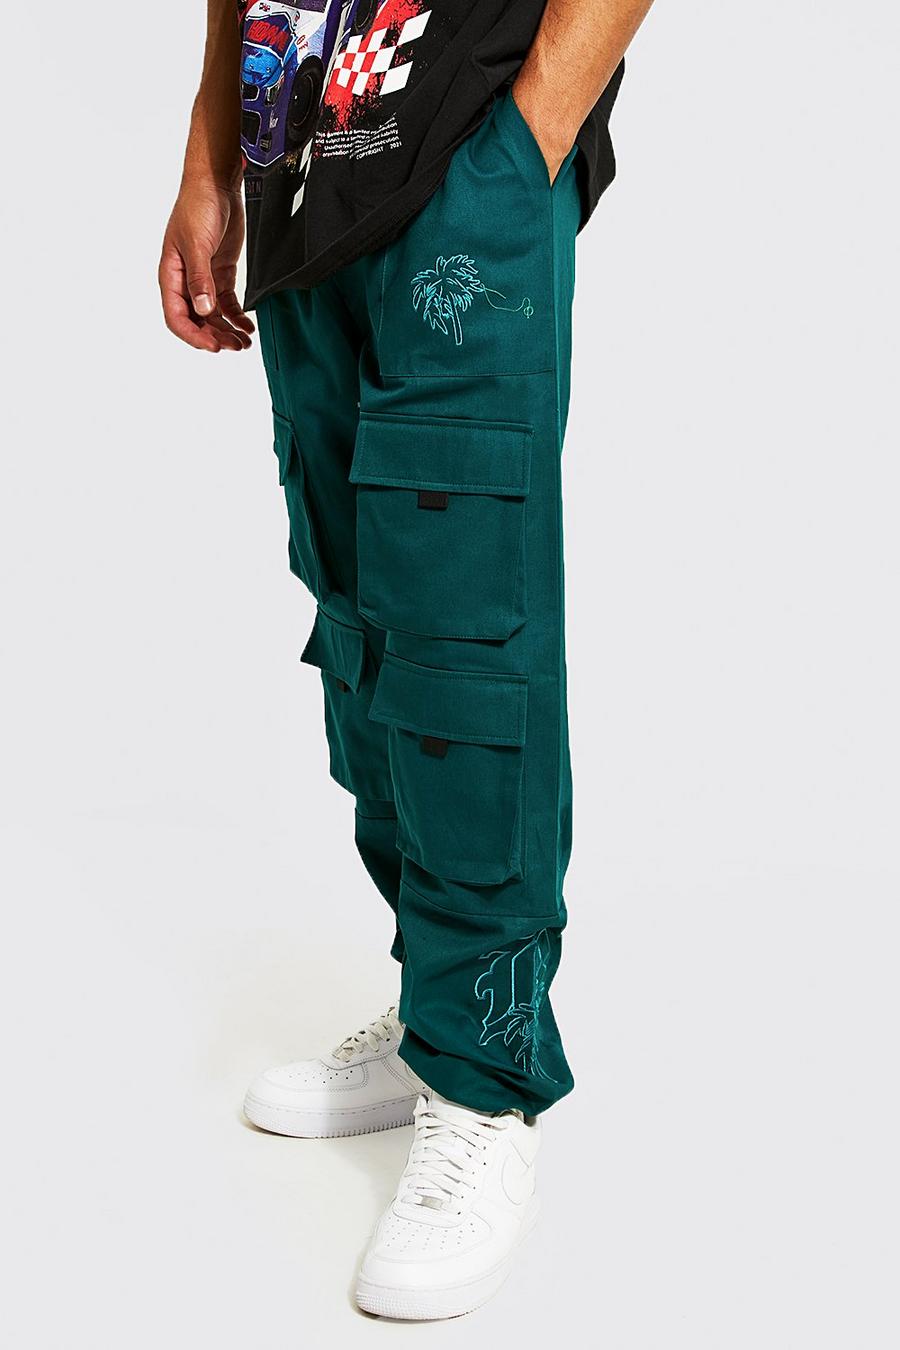 Pantalón deportivo Tall cargo de rasga bordado, Dark green image number 1